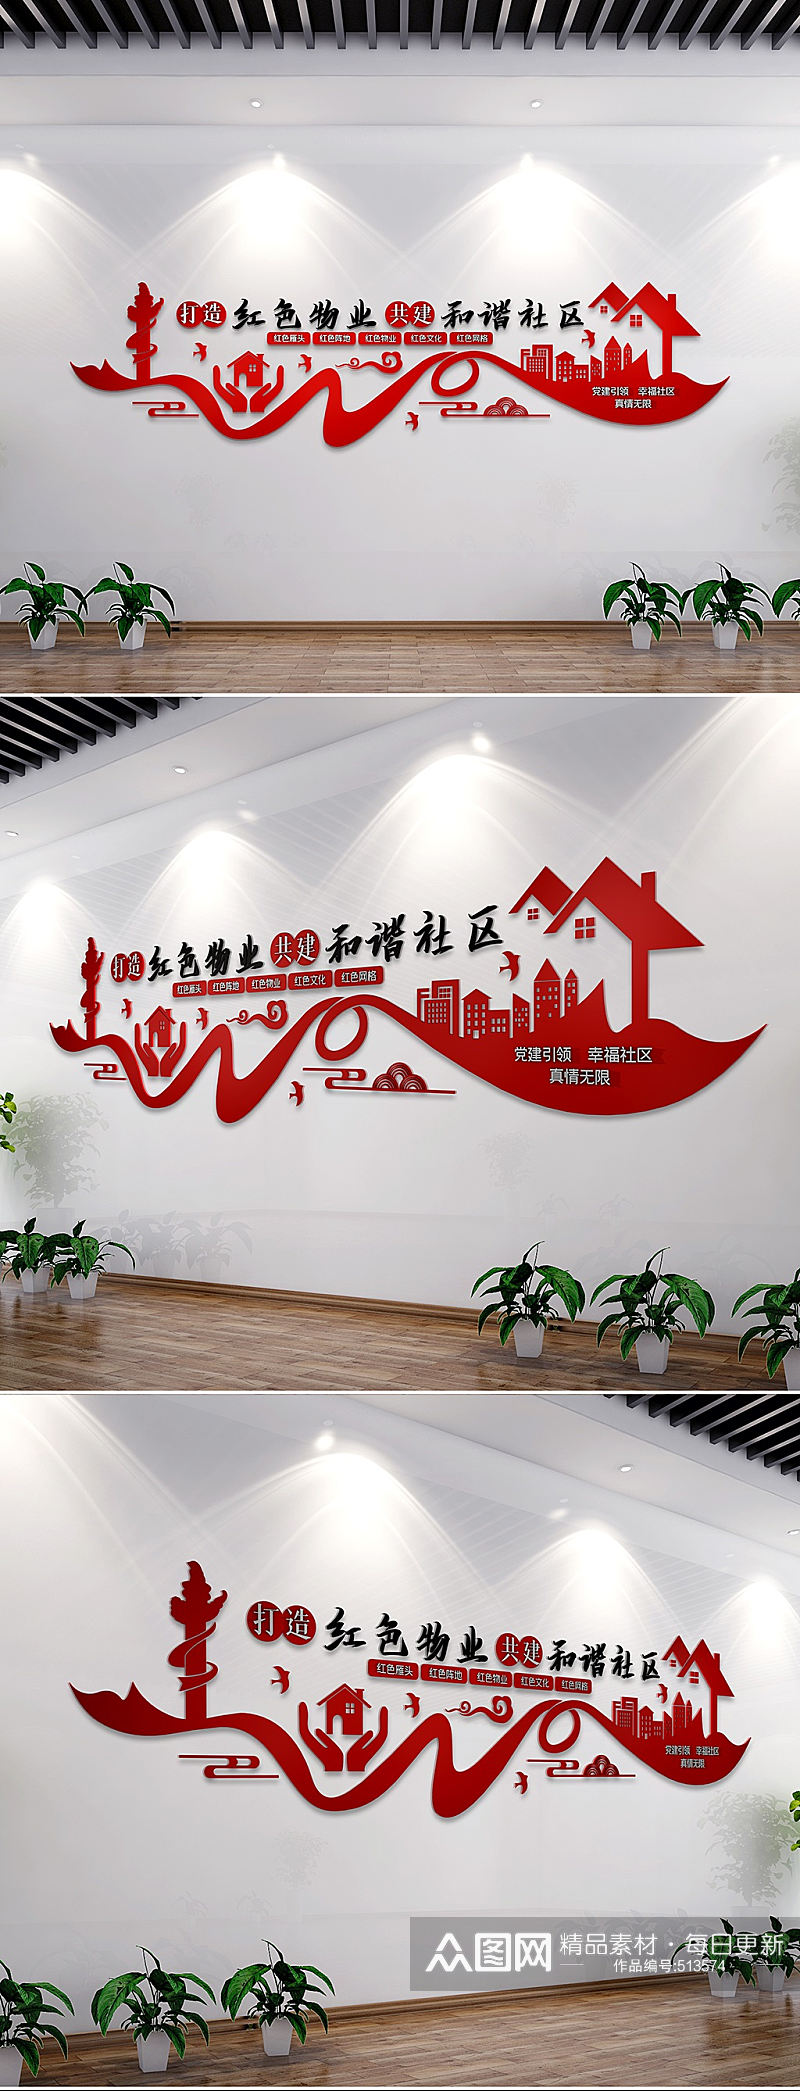 社区红色物业文化墙创意设计素材